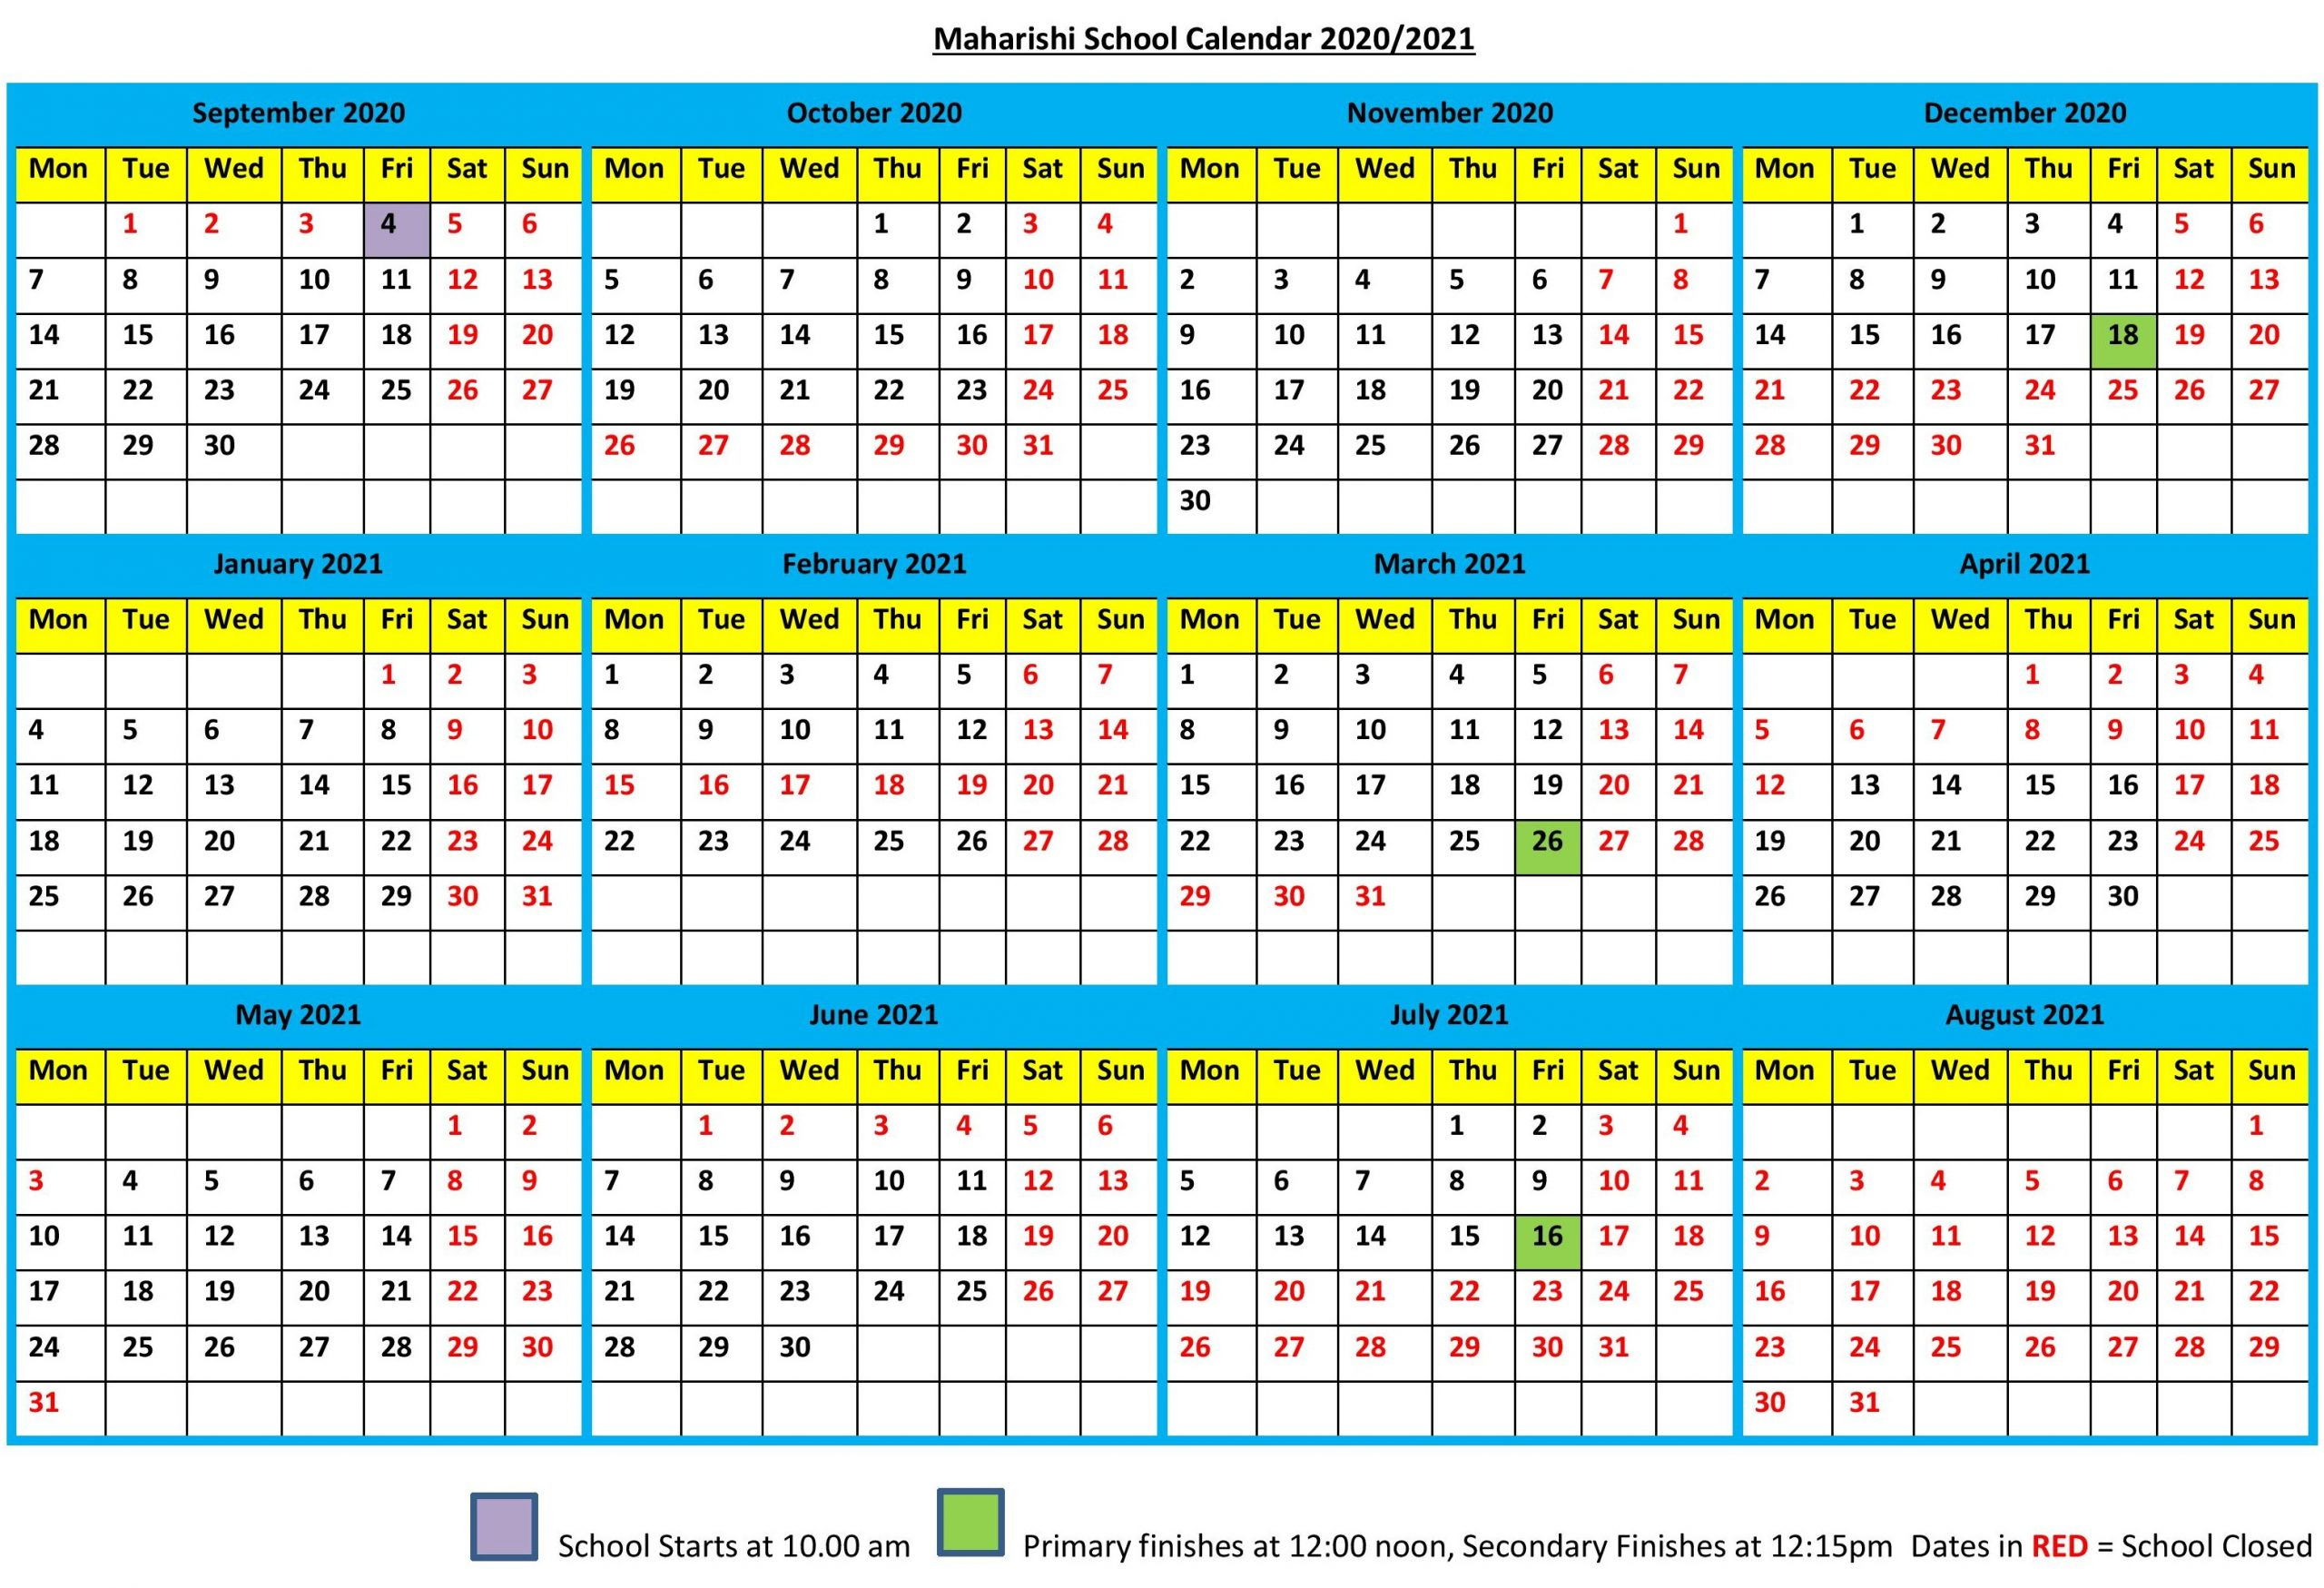 School Calendar 2021 | 2020Calendartemplates